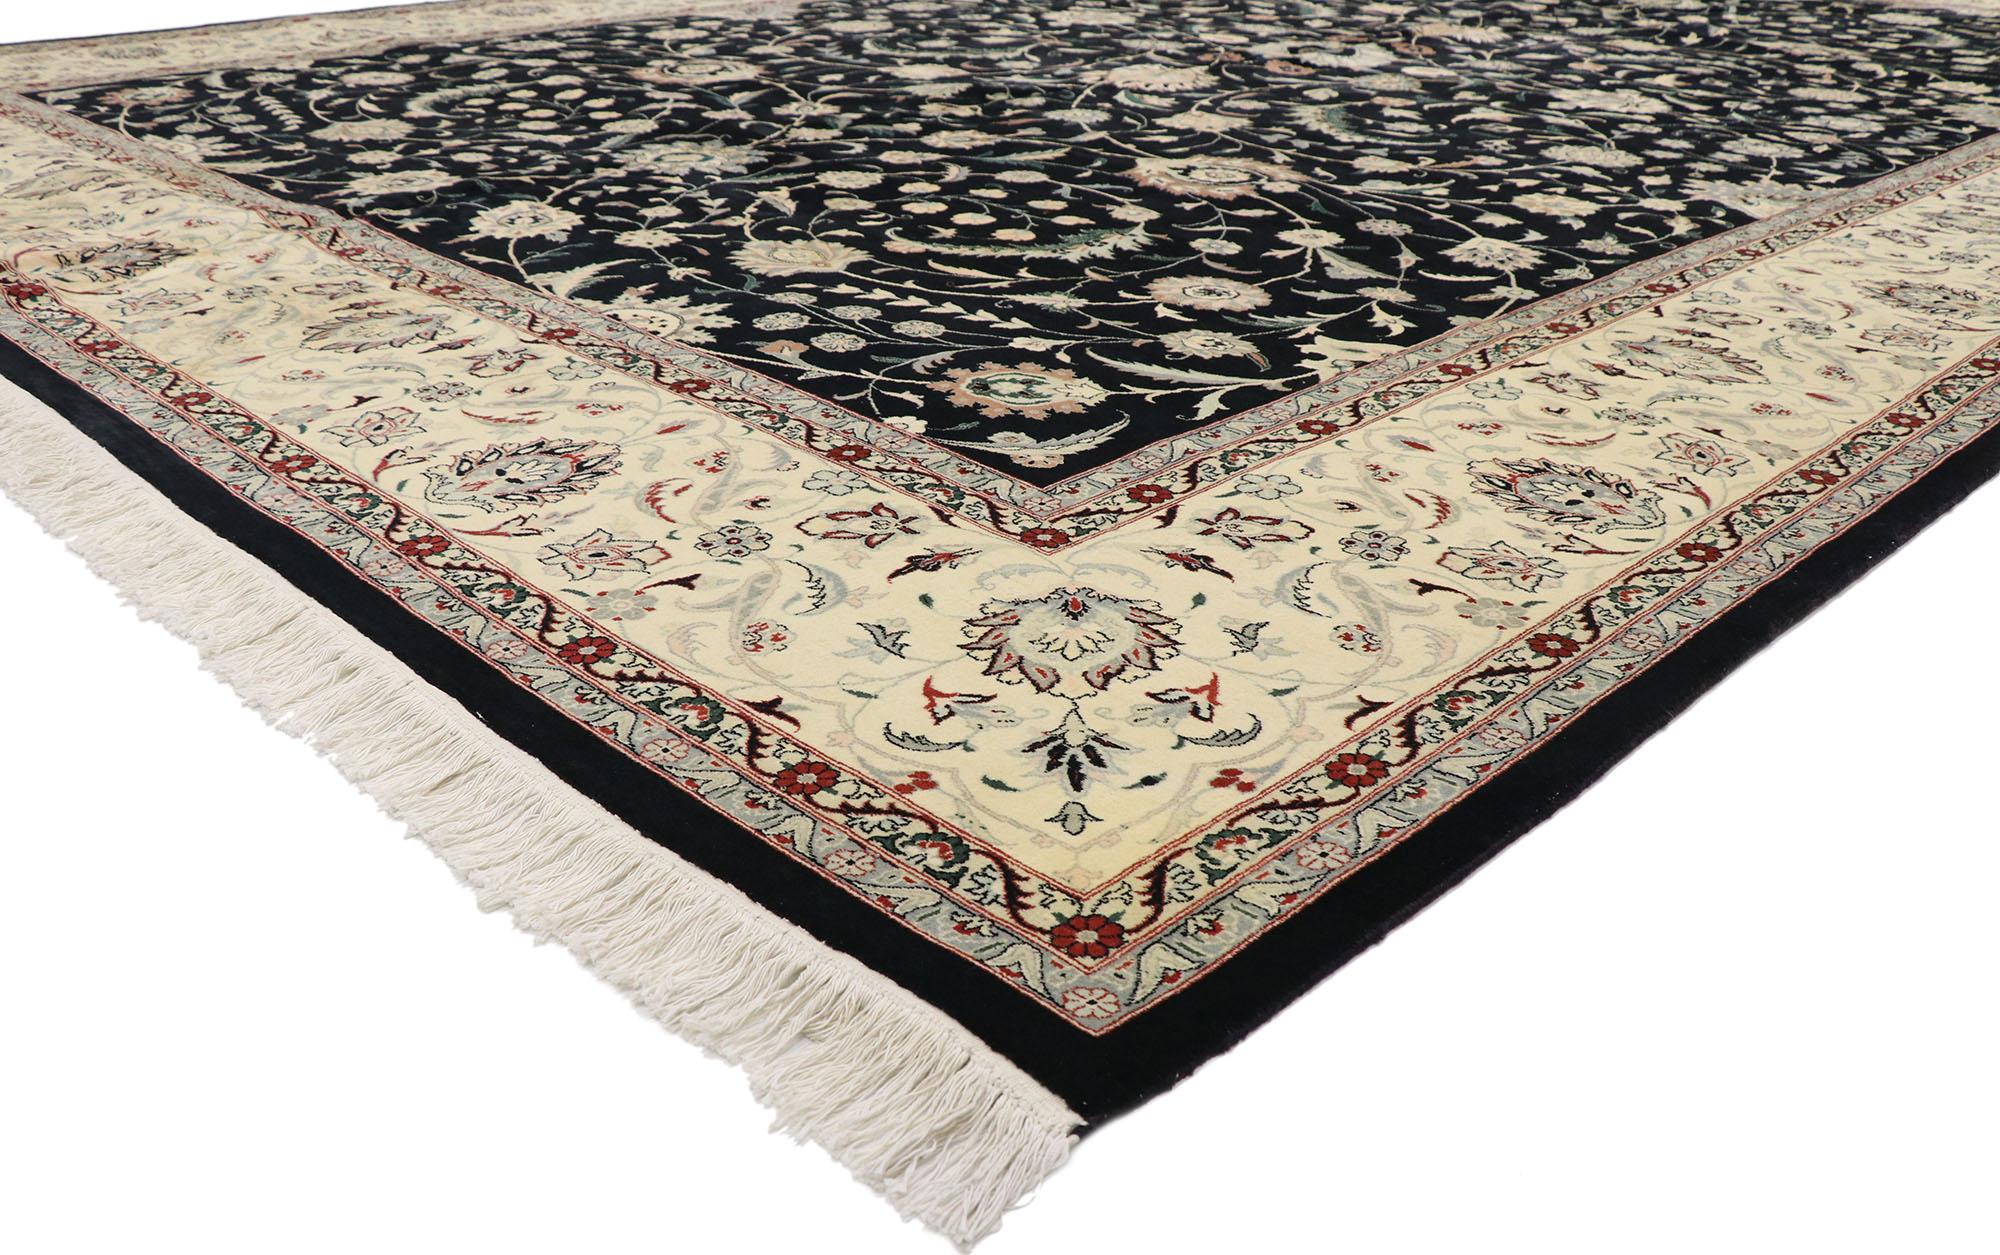 77747, tapis vintage Persan Tabriz Pakistanais de style baroque néoclassique. Ce tapis persan vintage en laine nouée à la main, de style Tabriz, est l'incarnation même de la tradition et de l'époque victorienne. Il captivera les esthètes les plus